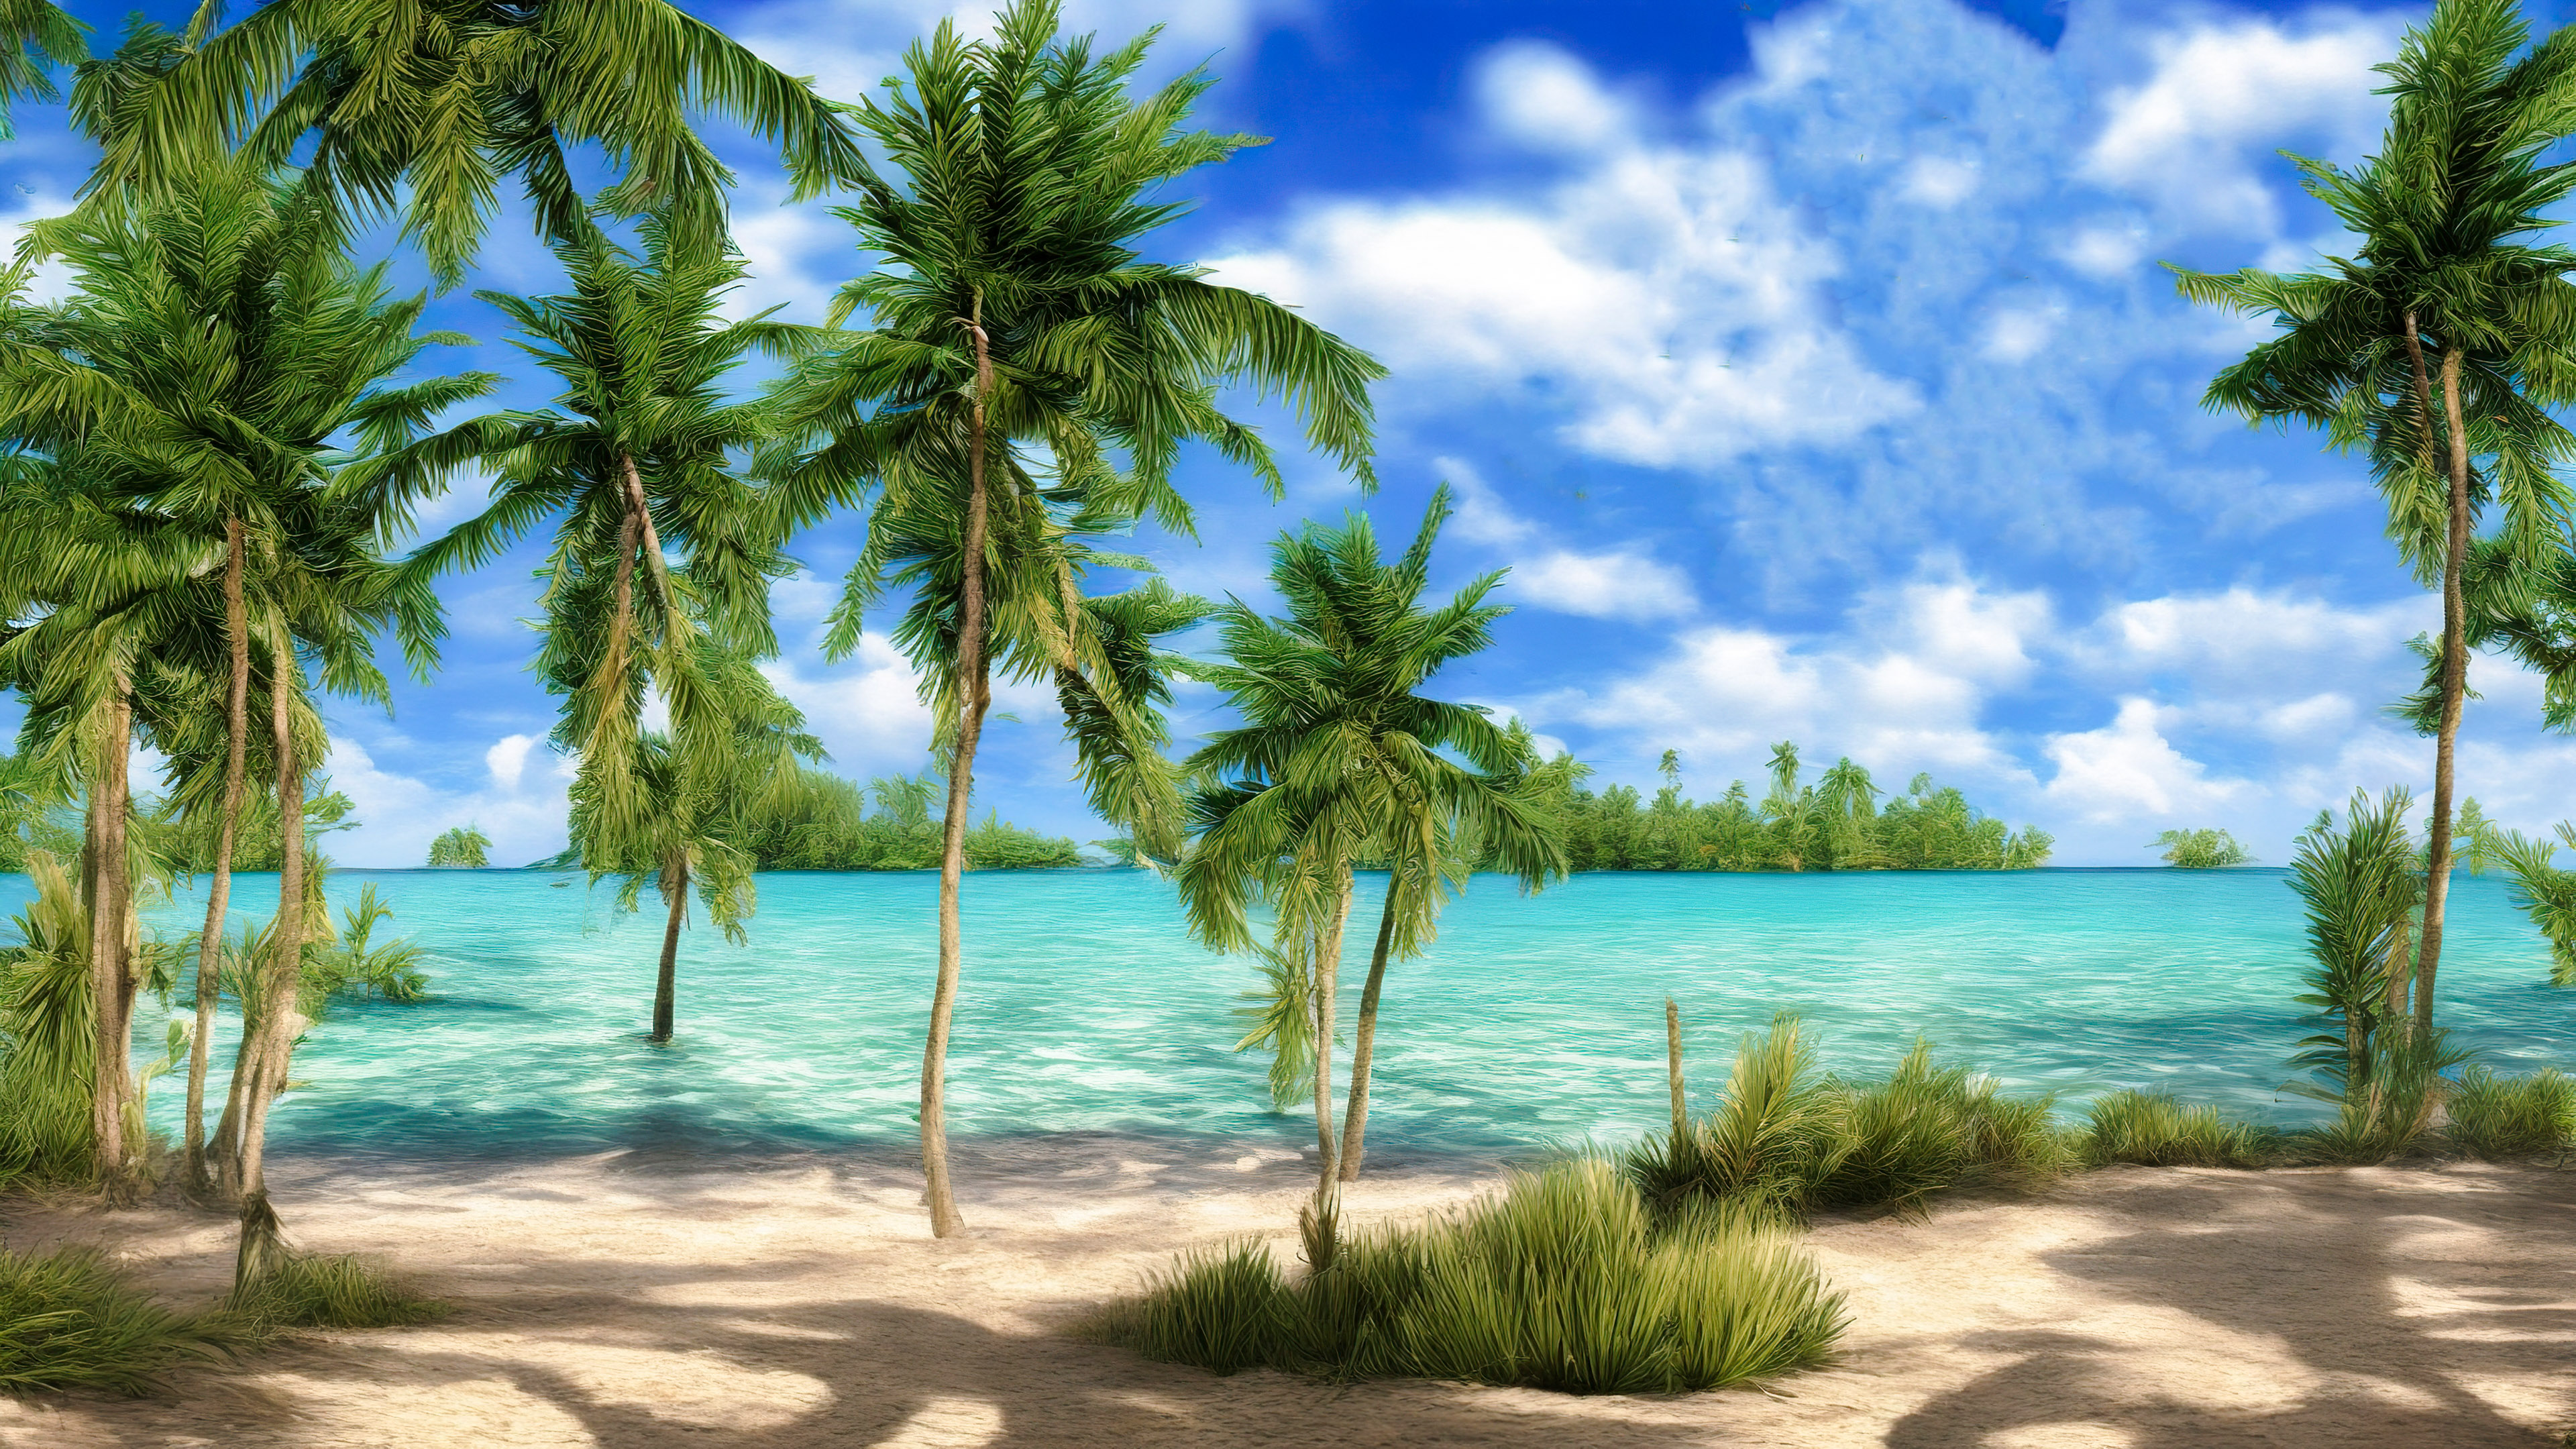 Téléchargez ce fond d'écran en 4K des paysages enchanteur mettant en scène une plage tranquille avec des eaux turquoise cristallines et des palmiers balançant dans la brise.